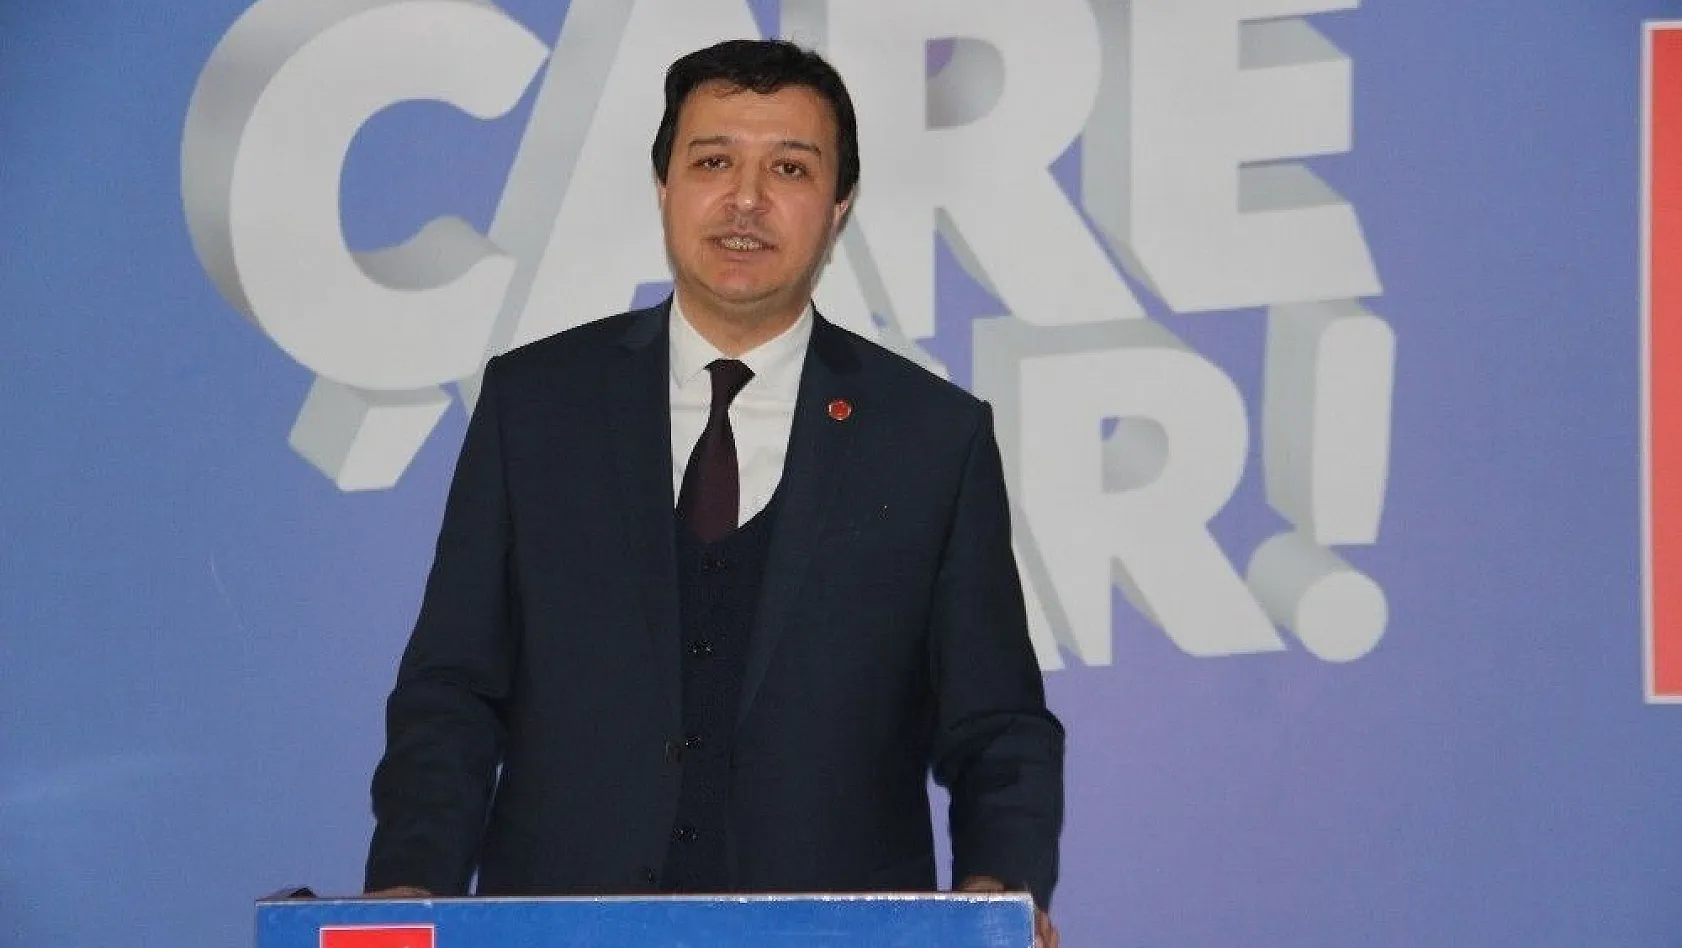 Saadet Partisi ilçe belediye başkan adaylarını açıkladı